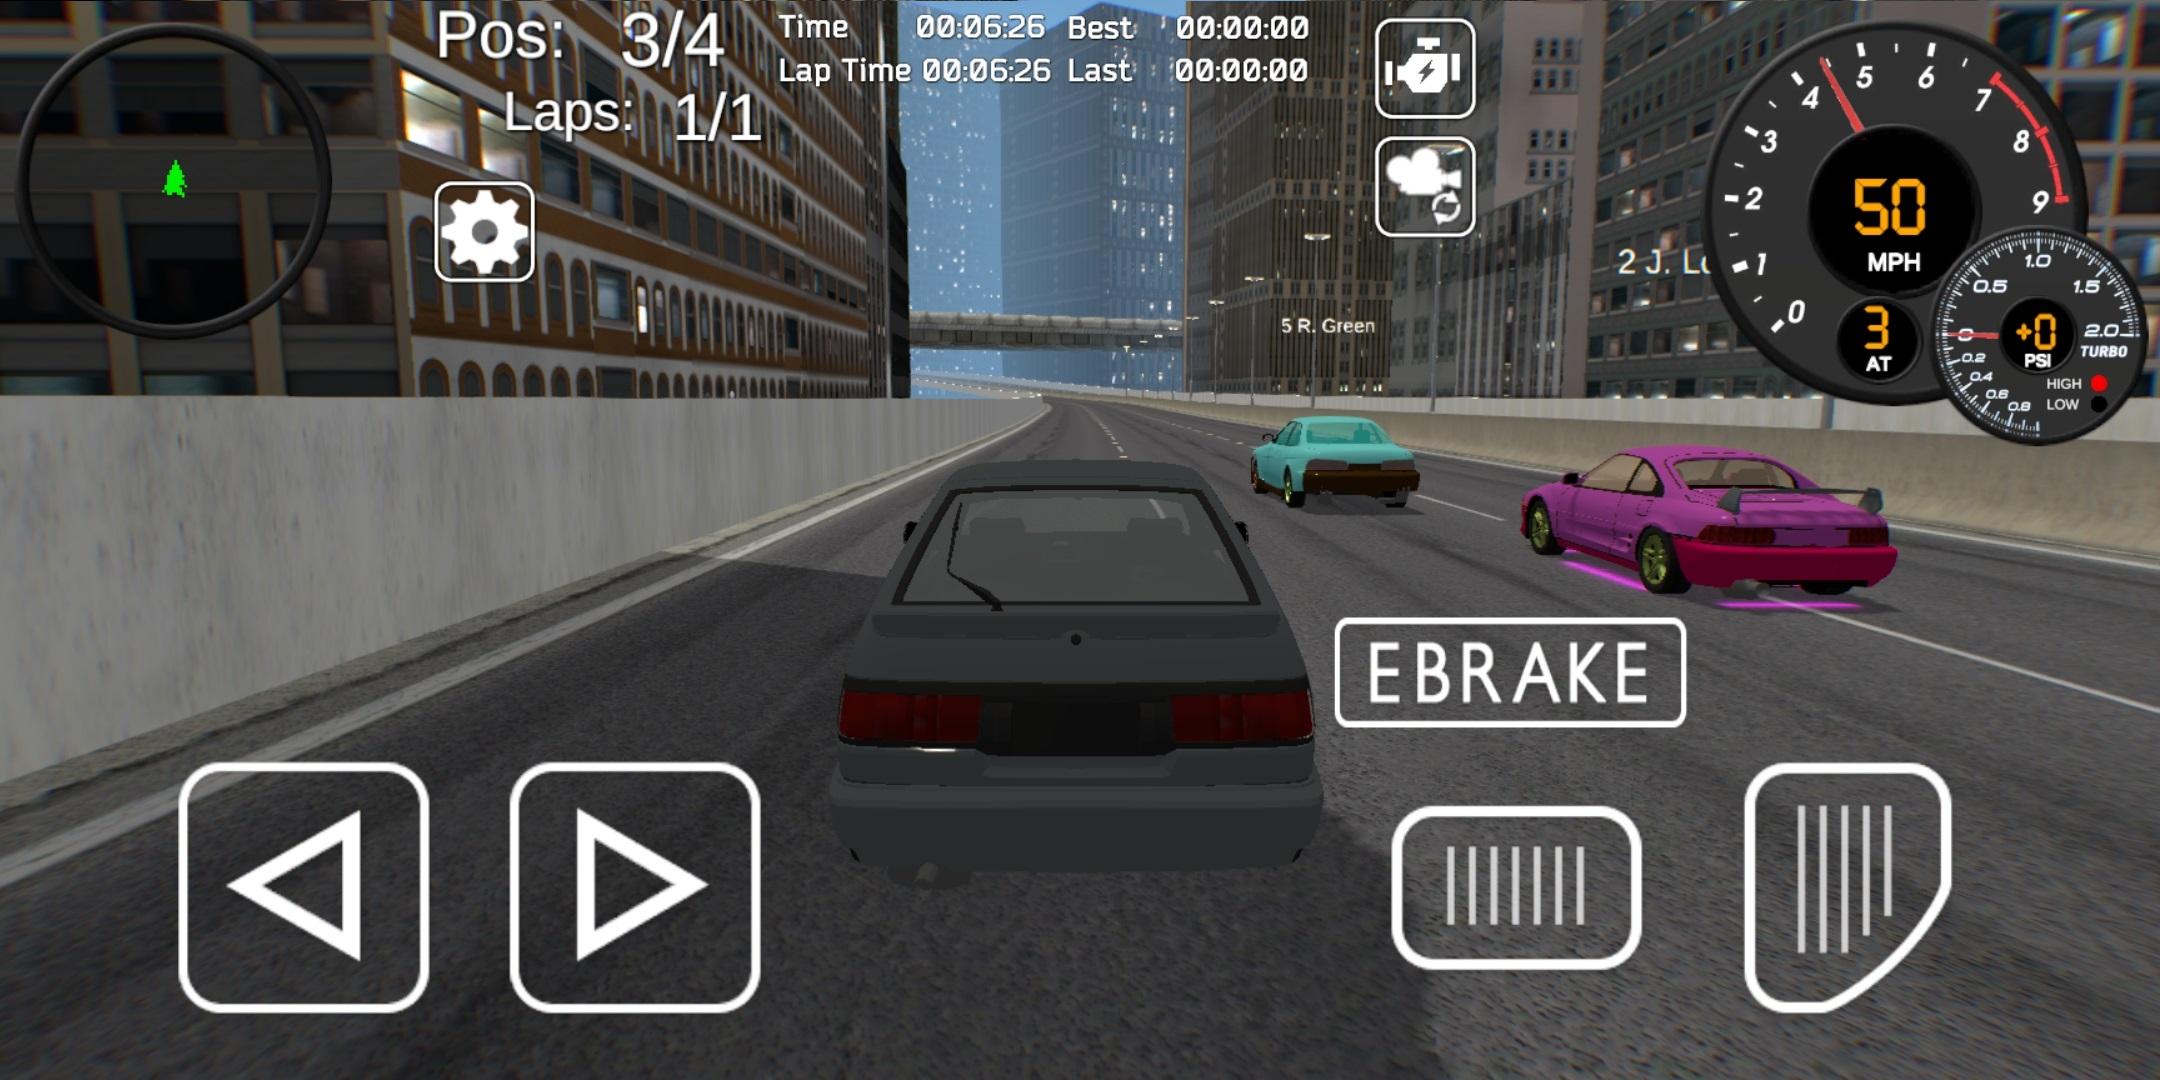 Tuner Z - Car Tuning and Racing Simulator 0.9.6.2.4.6 Screenshot 15